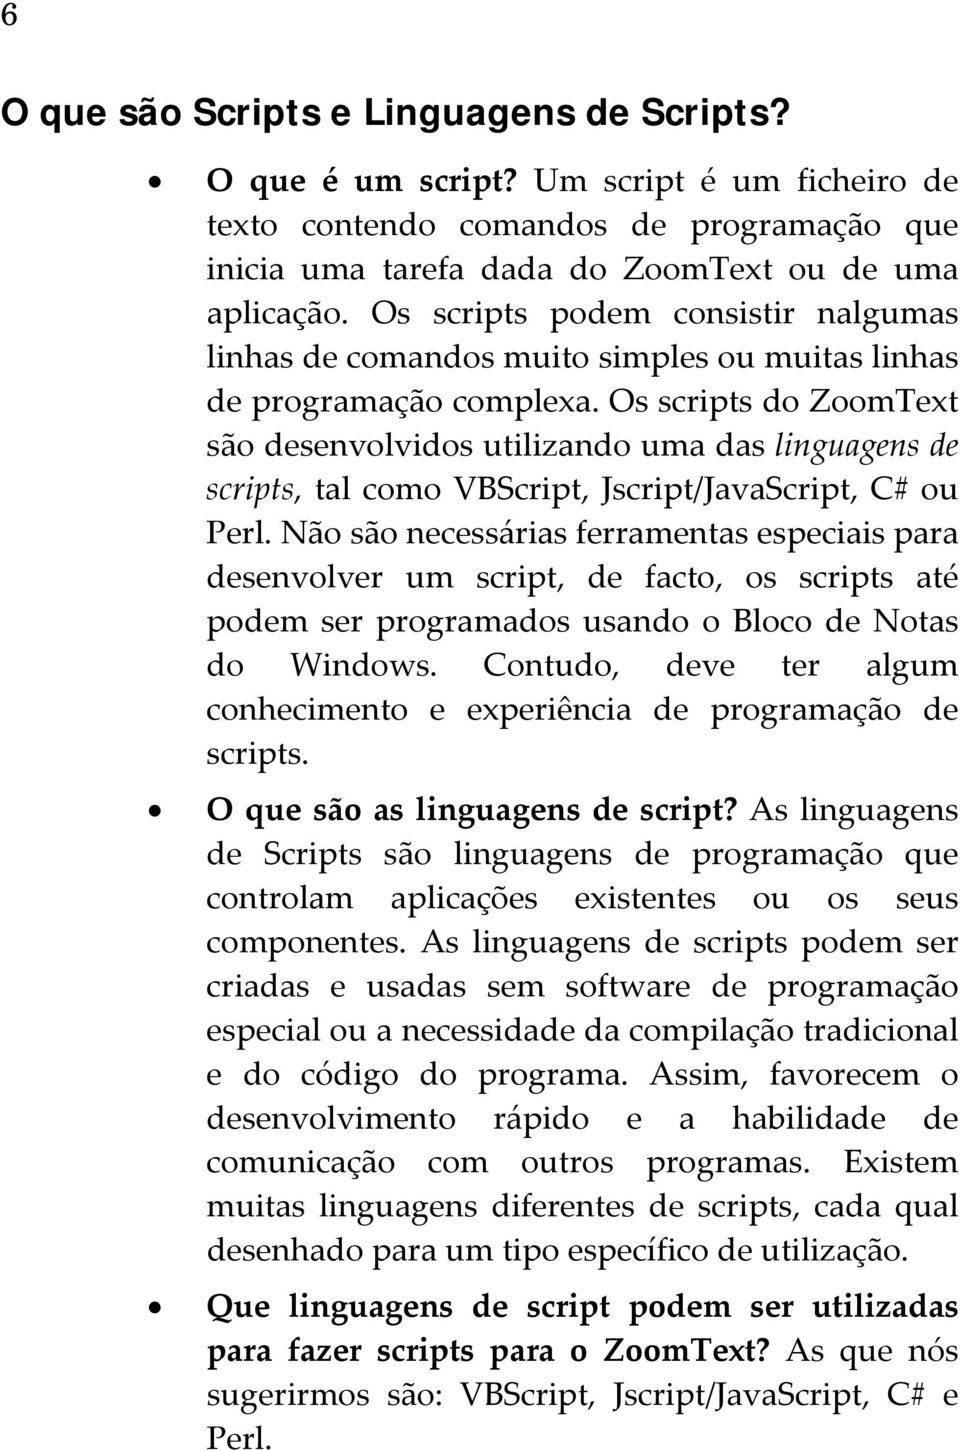 Os scripts do ZoomText são desenvolvidos utilizando uma das linguagens de scripts, tal como VBScript, Jscript/JavaScript, C# ou Perl.